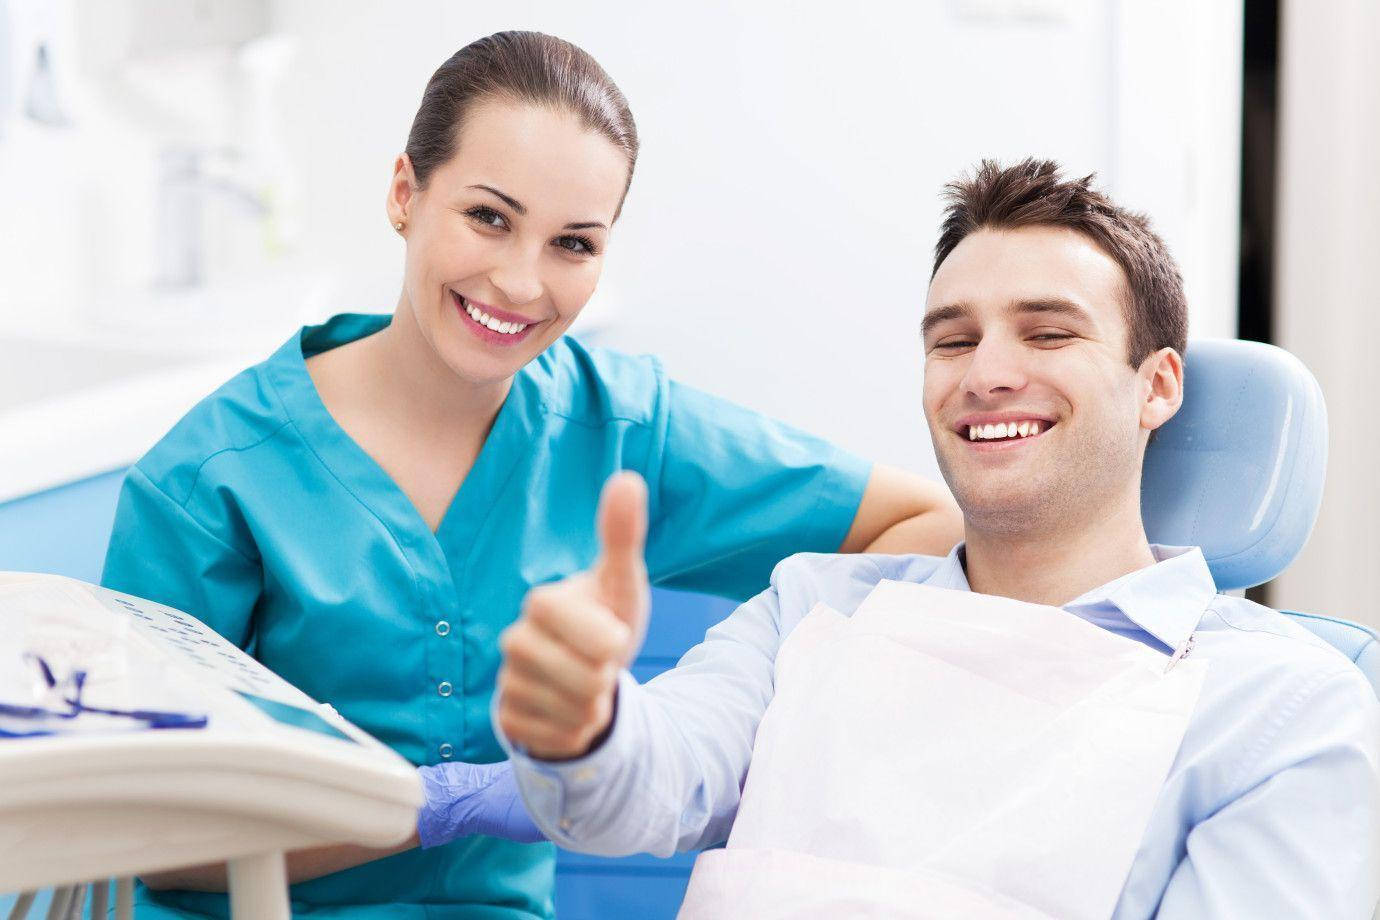 Tandlæge smiler med patient Wallpaper